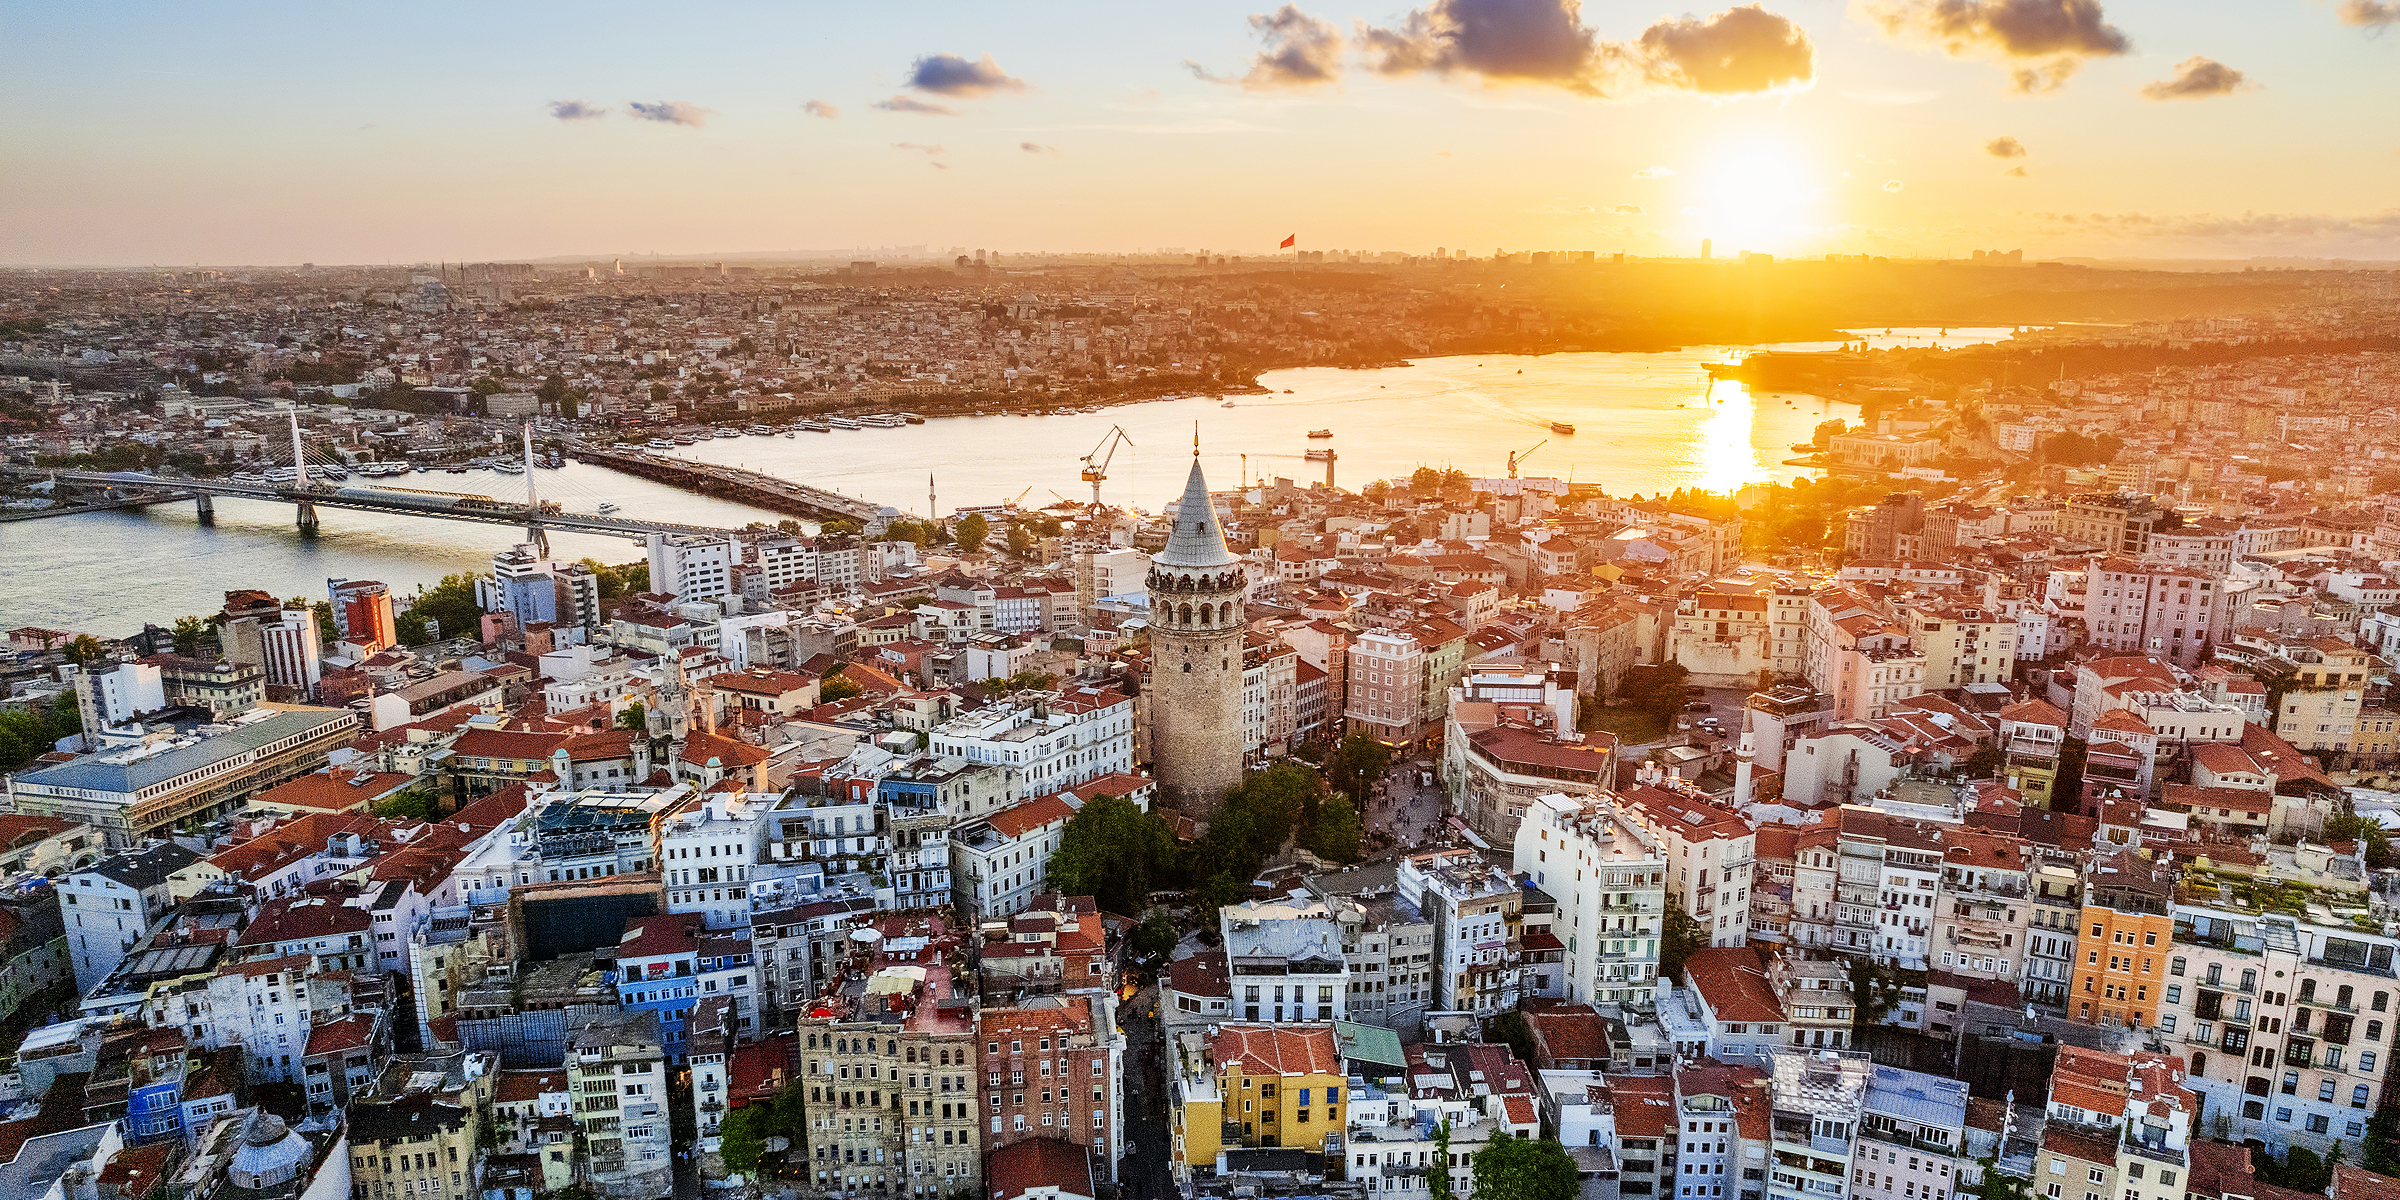 Aerial view of Istanbul | Source: Freepik